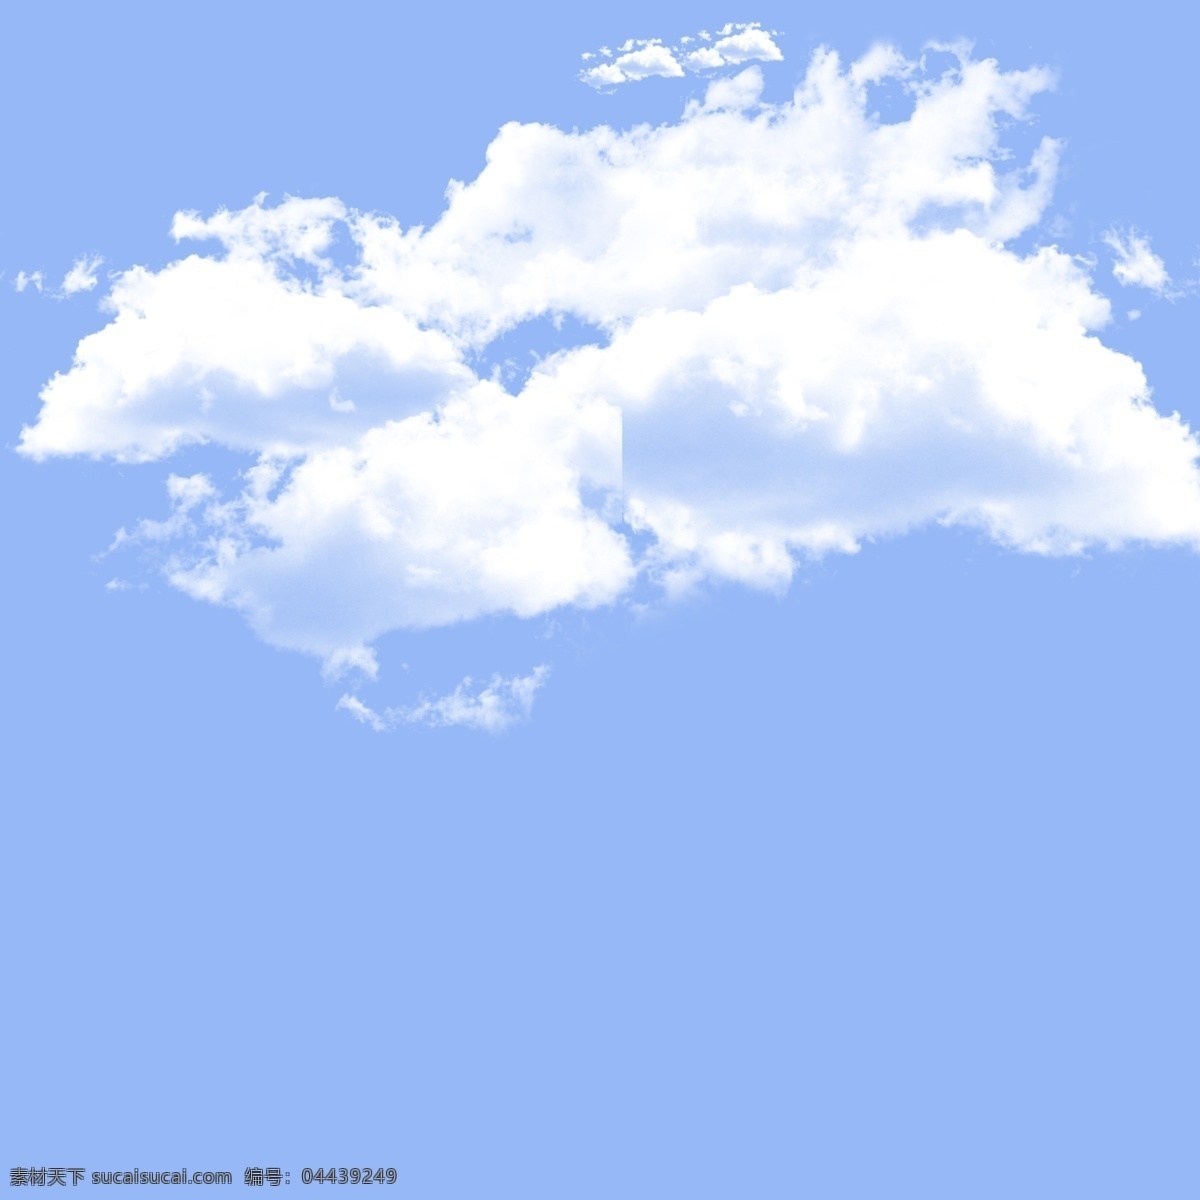 云 层叠云 蓝天白云云朵 云朵分层 云层 天空 云分层图 自然景观 自然风光